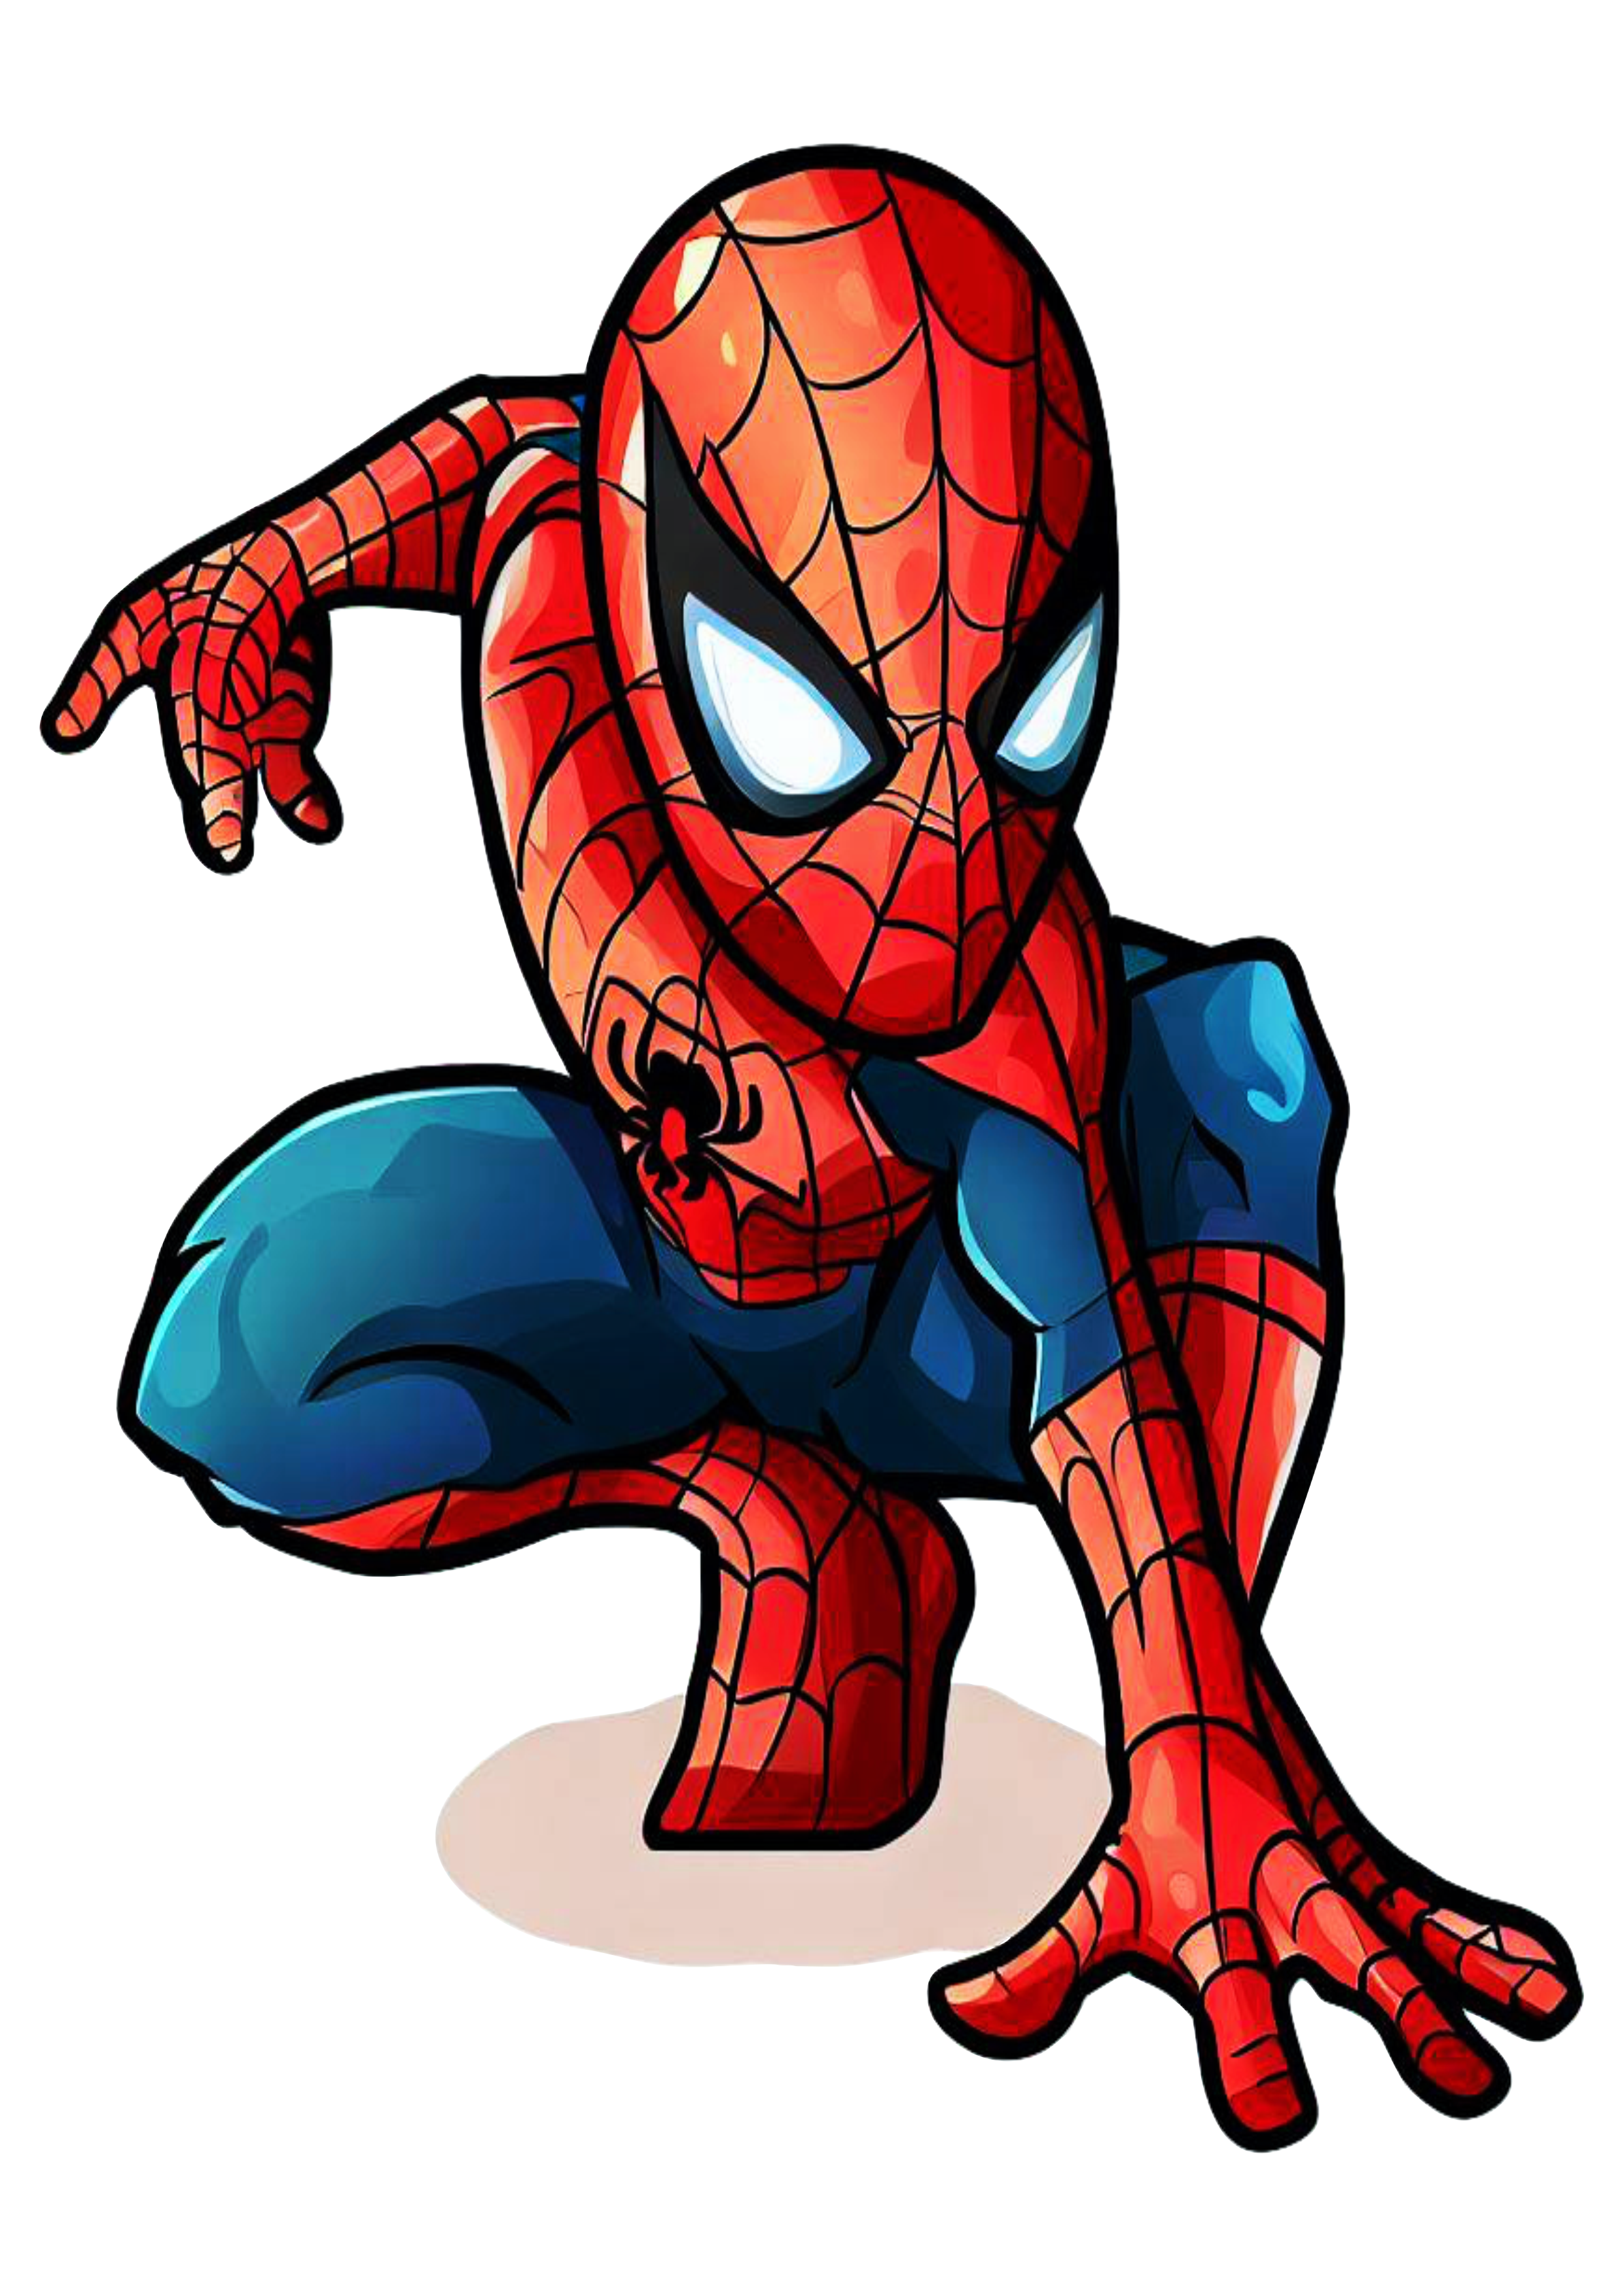 Homem aranha cute spider man desenho simples marvel comics fundo transparente png